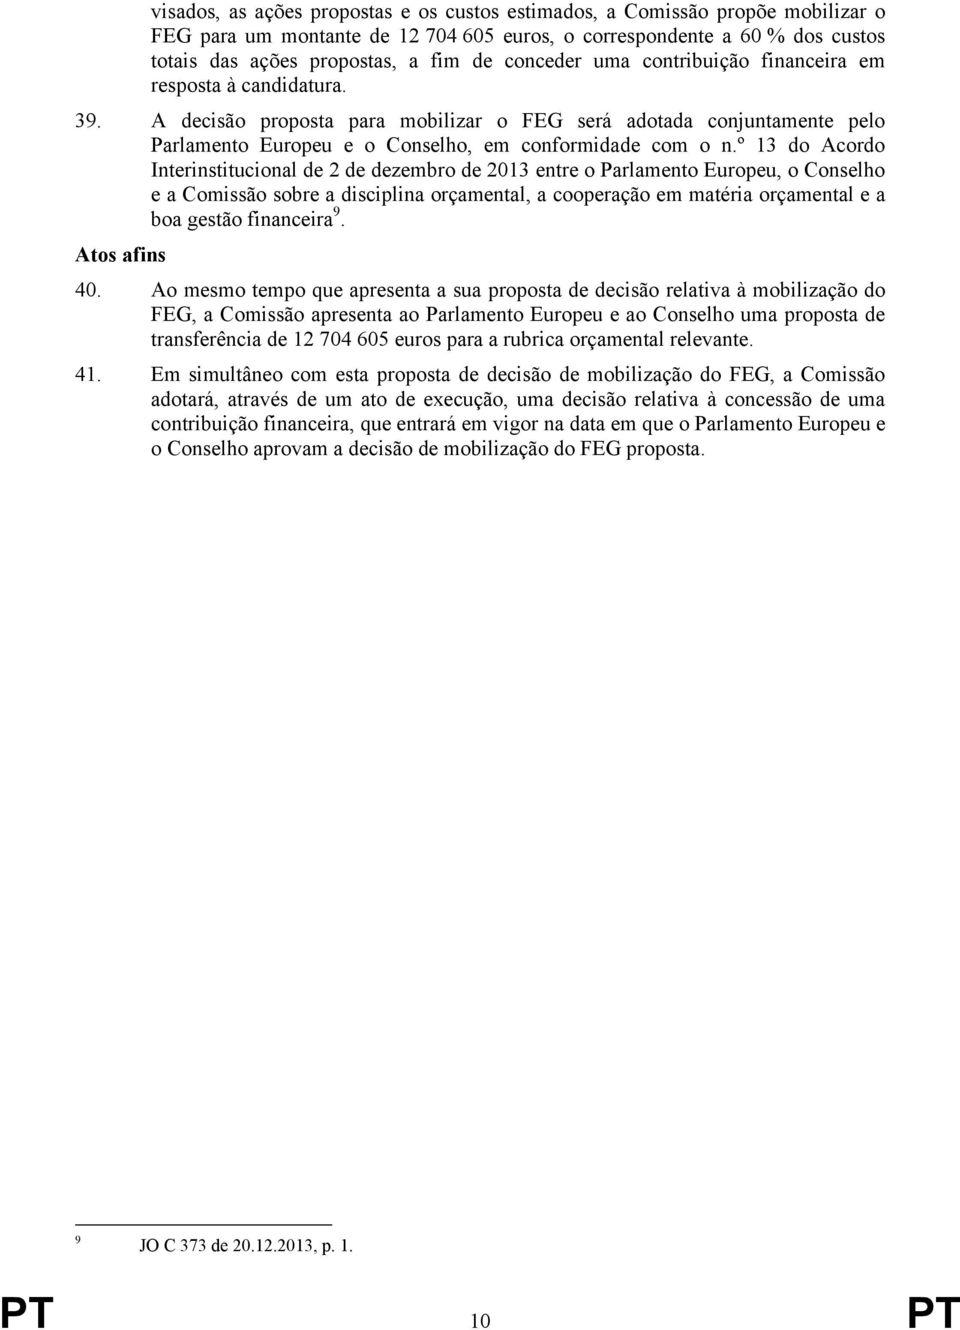 º 13 do Acordo Interinstitucional de 2 de dezembro de 2013 entre o Parlamento Europeu, o Conselho e a Comissão sobre a disciplina orçamental, a cooperação em matéria orçamental e a boa gestão